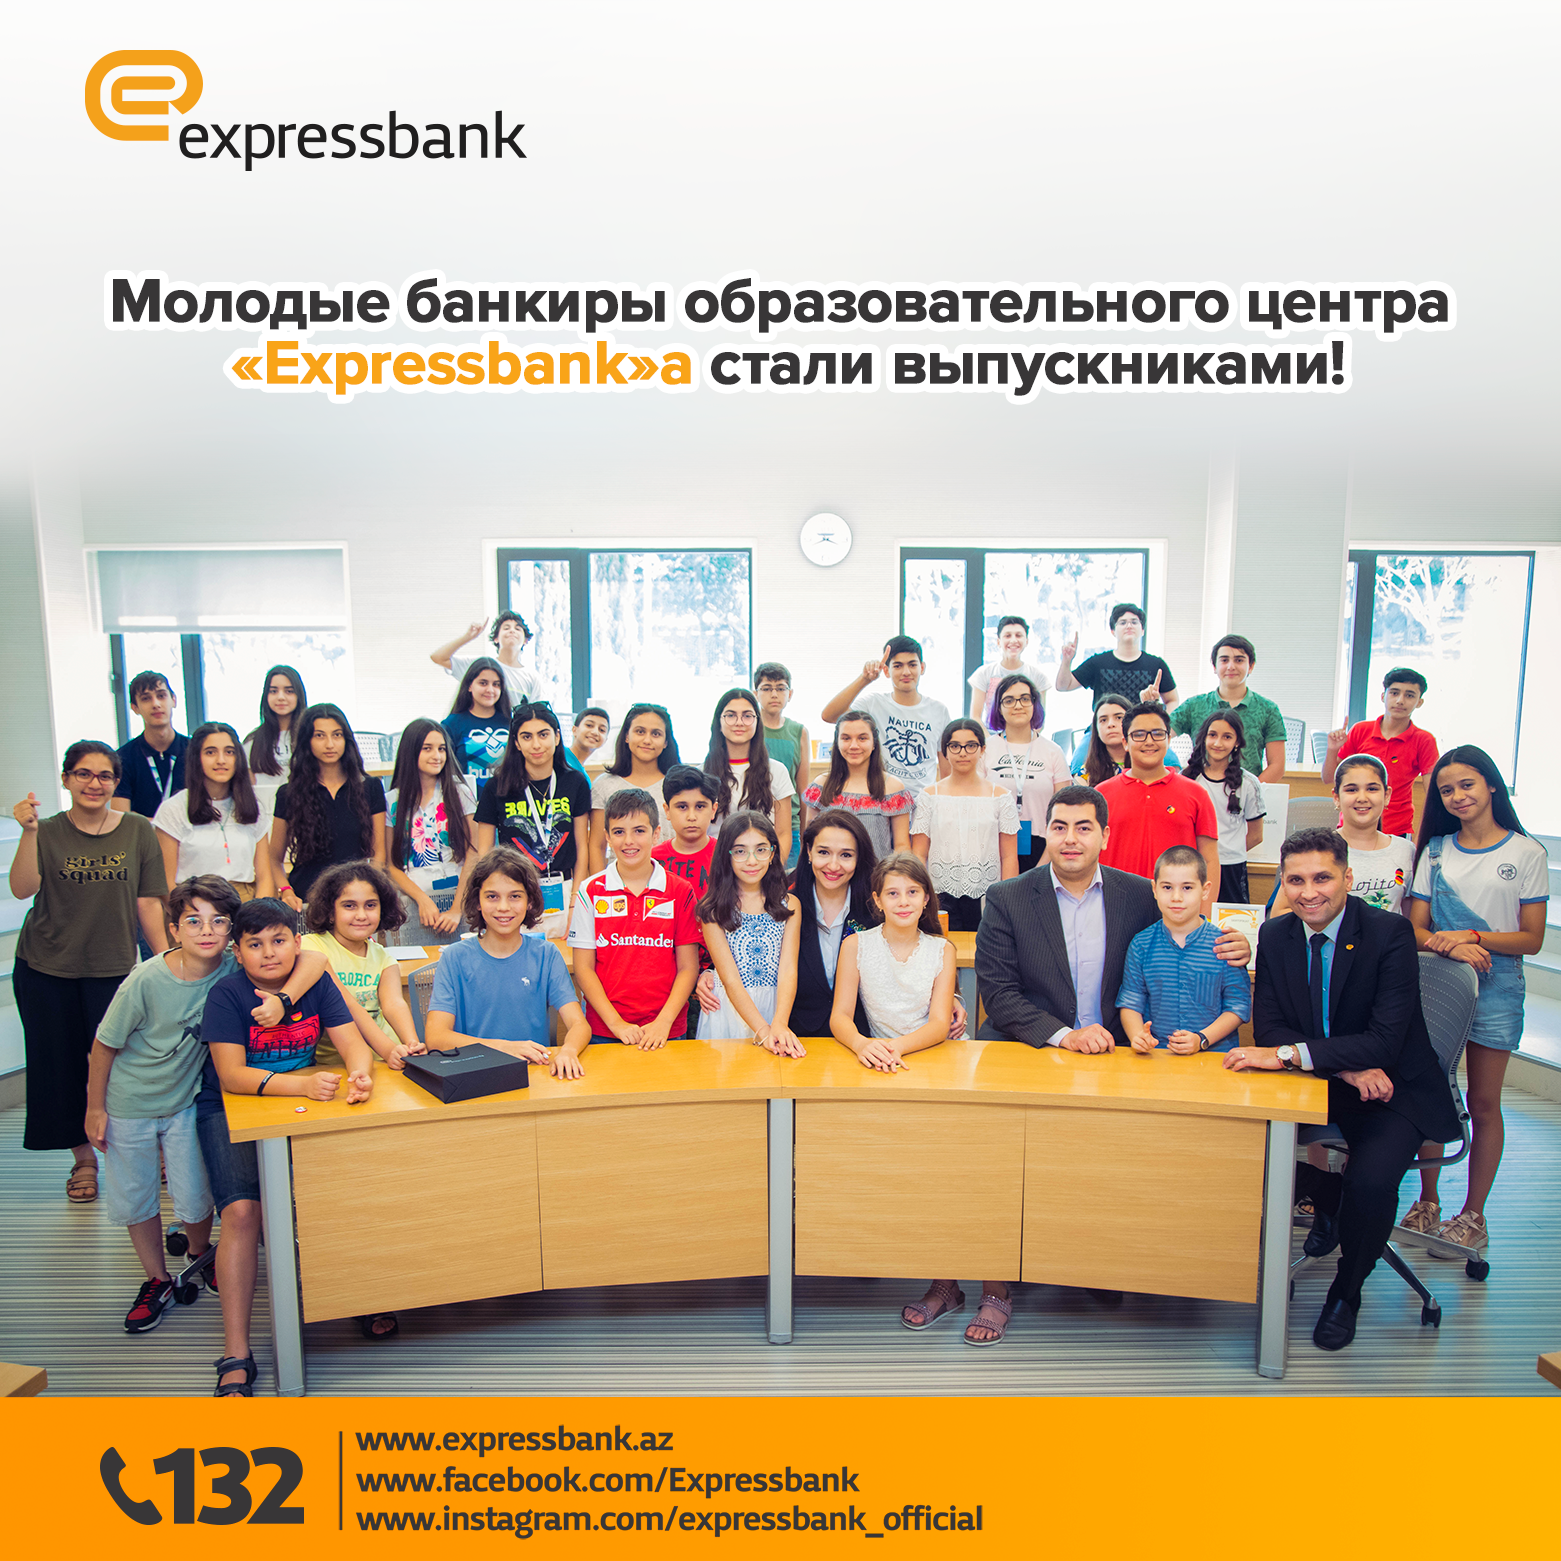 Молодые банкиры образовательного центра "Expressbank"a стали выпускниками